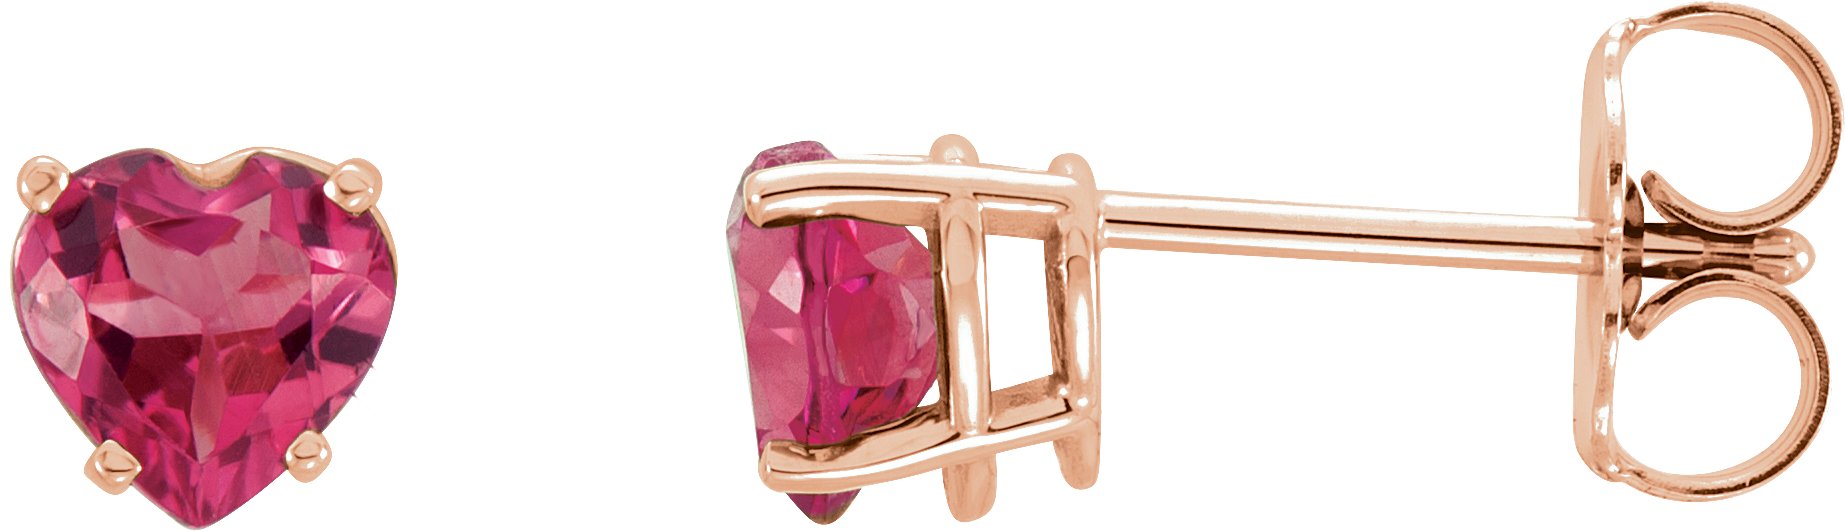 14K Rose Pink Tourmaline Heart Earrings Ref. 10446958